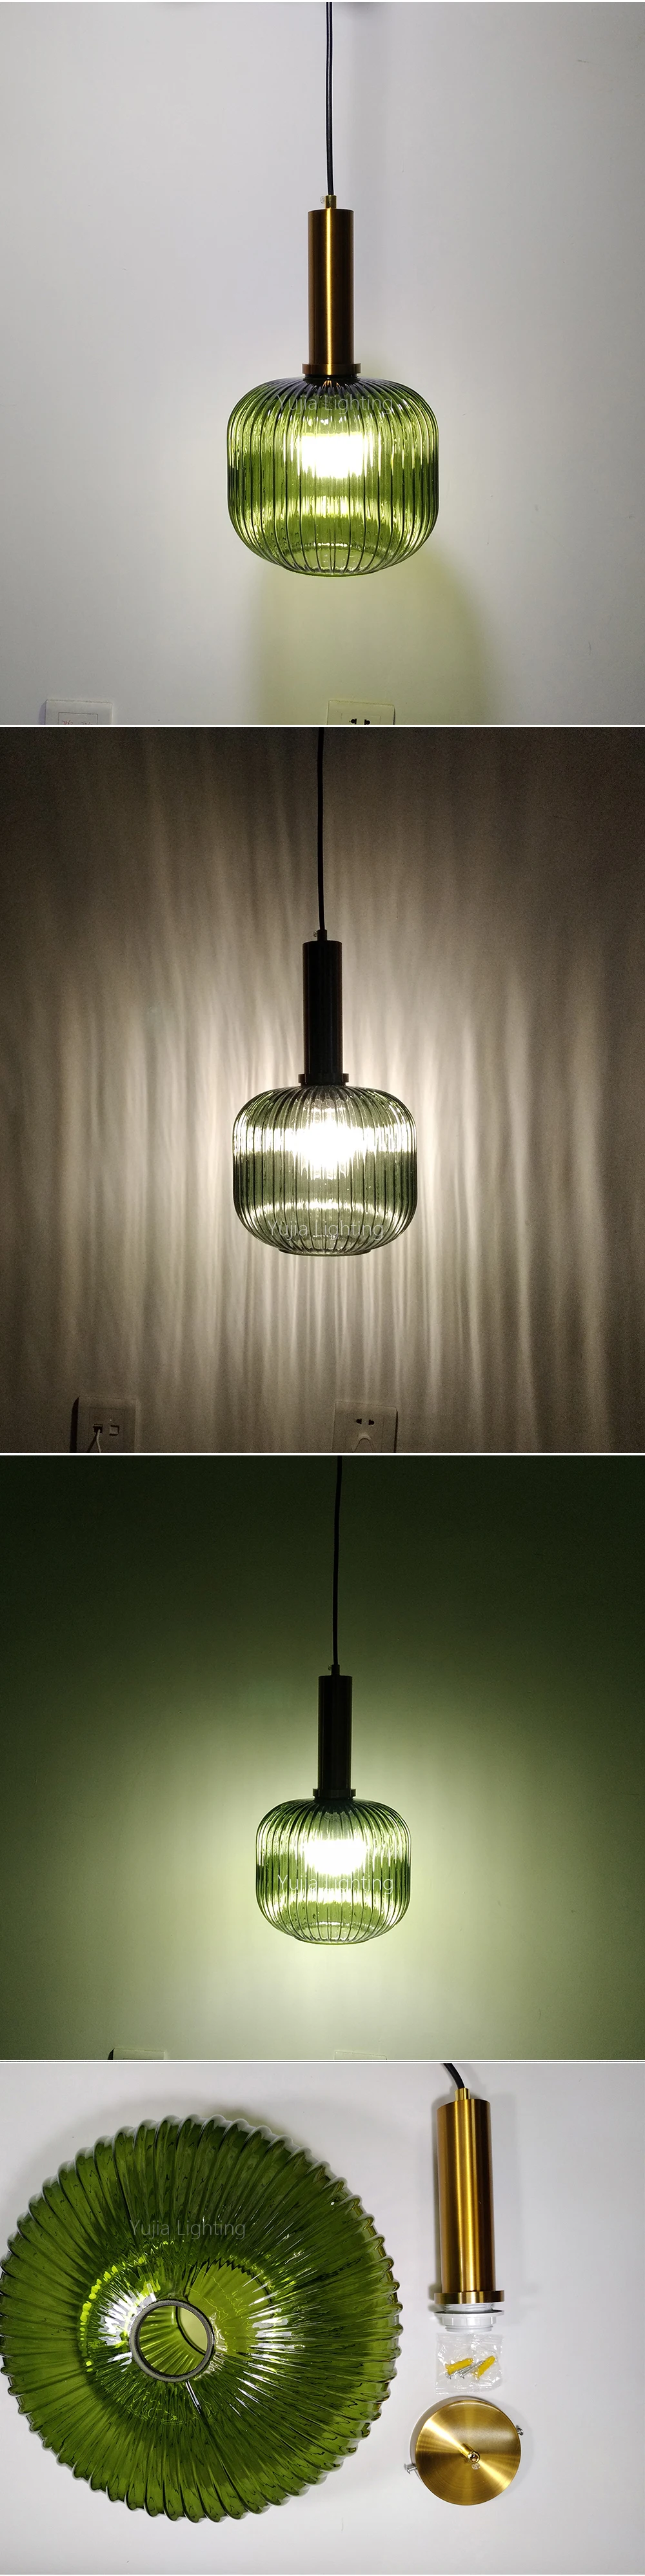 Цветные подвесные светильники, стеклянный подвесной светильник, зеленый, серый оттенок, для кухни, столовой, бара, скандинавские светодиодные подвесные лампы, современный светильник E27